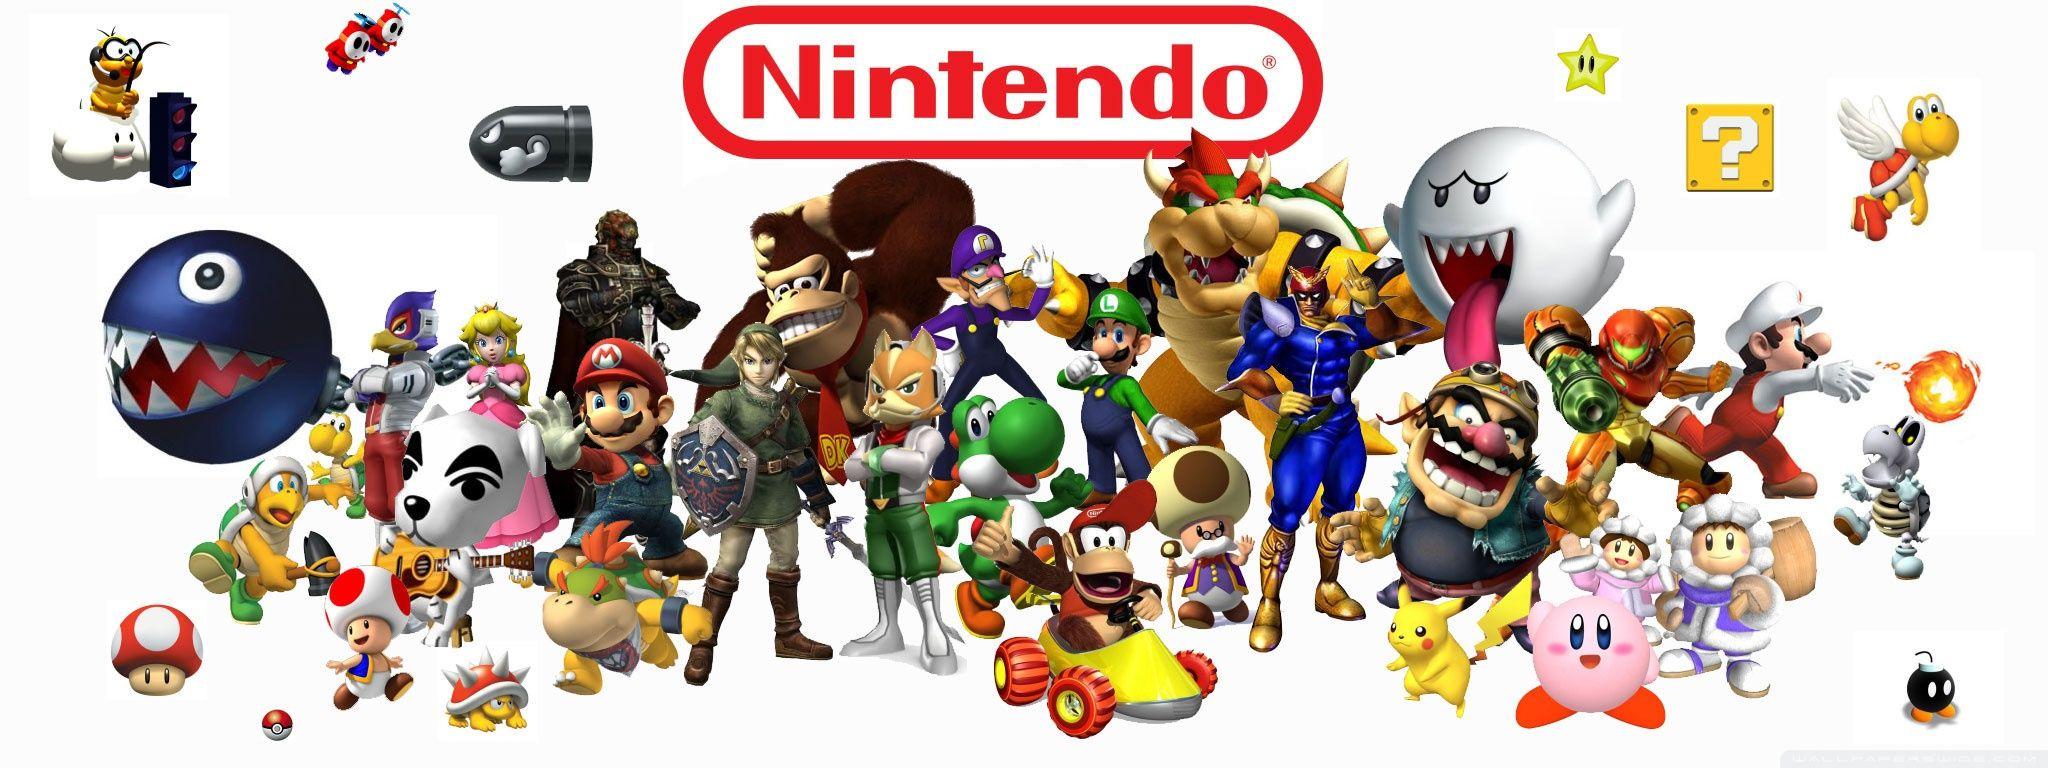 Nintendo Wallpaper Nintendo Wiki